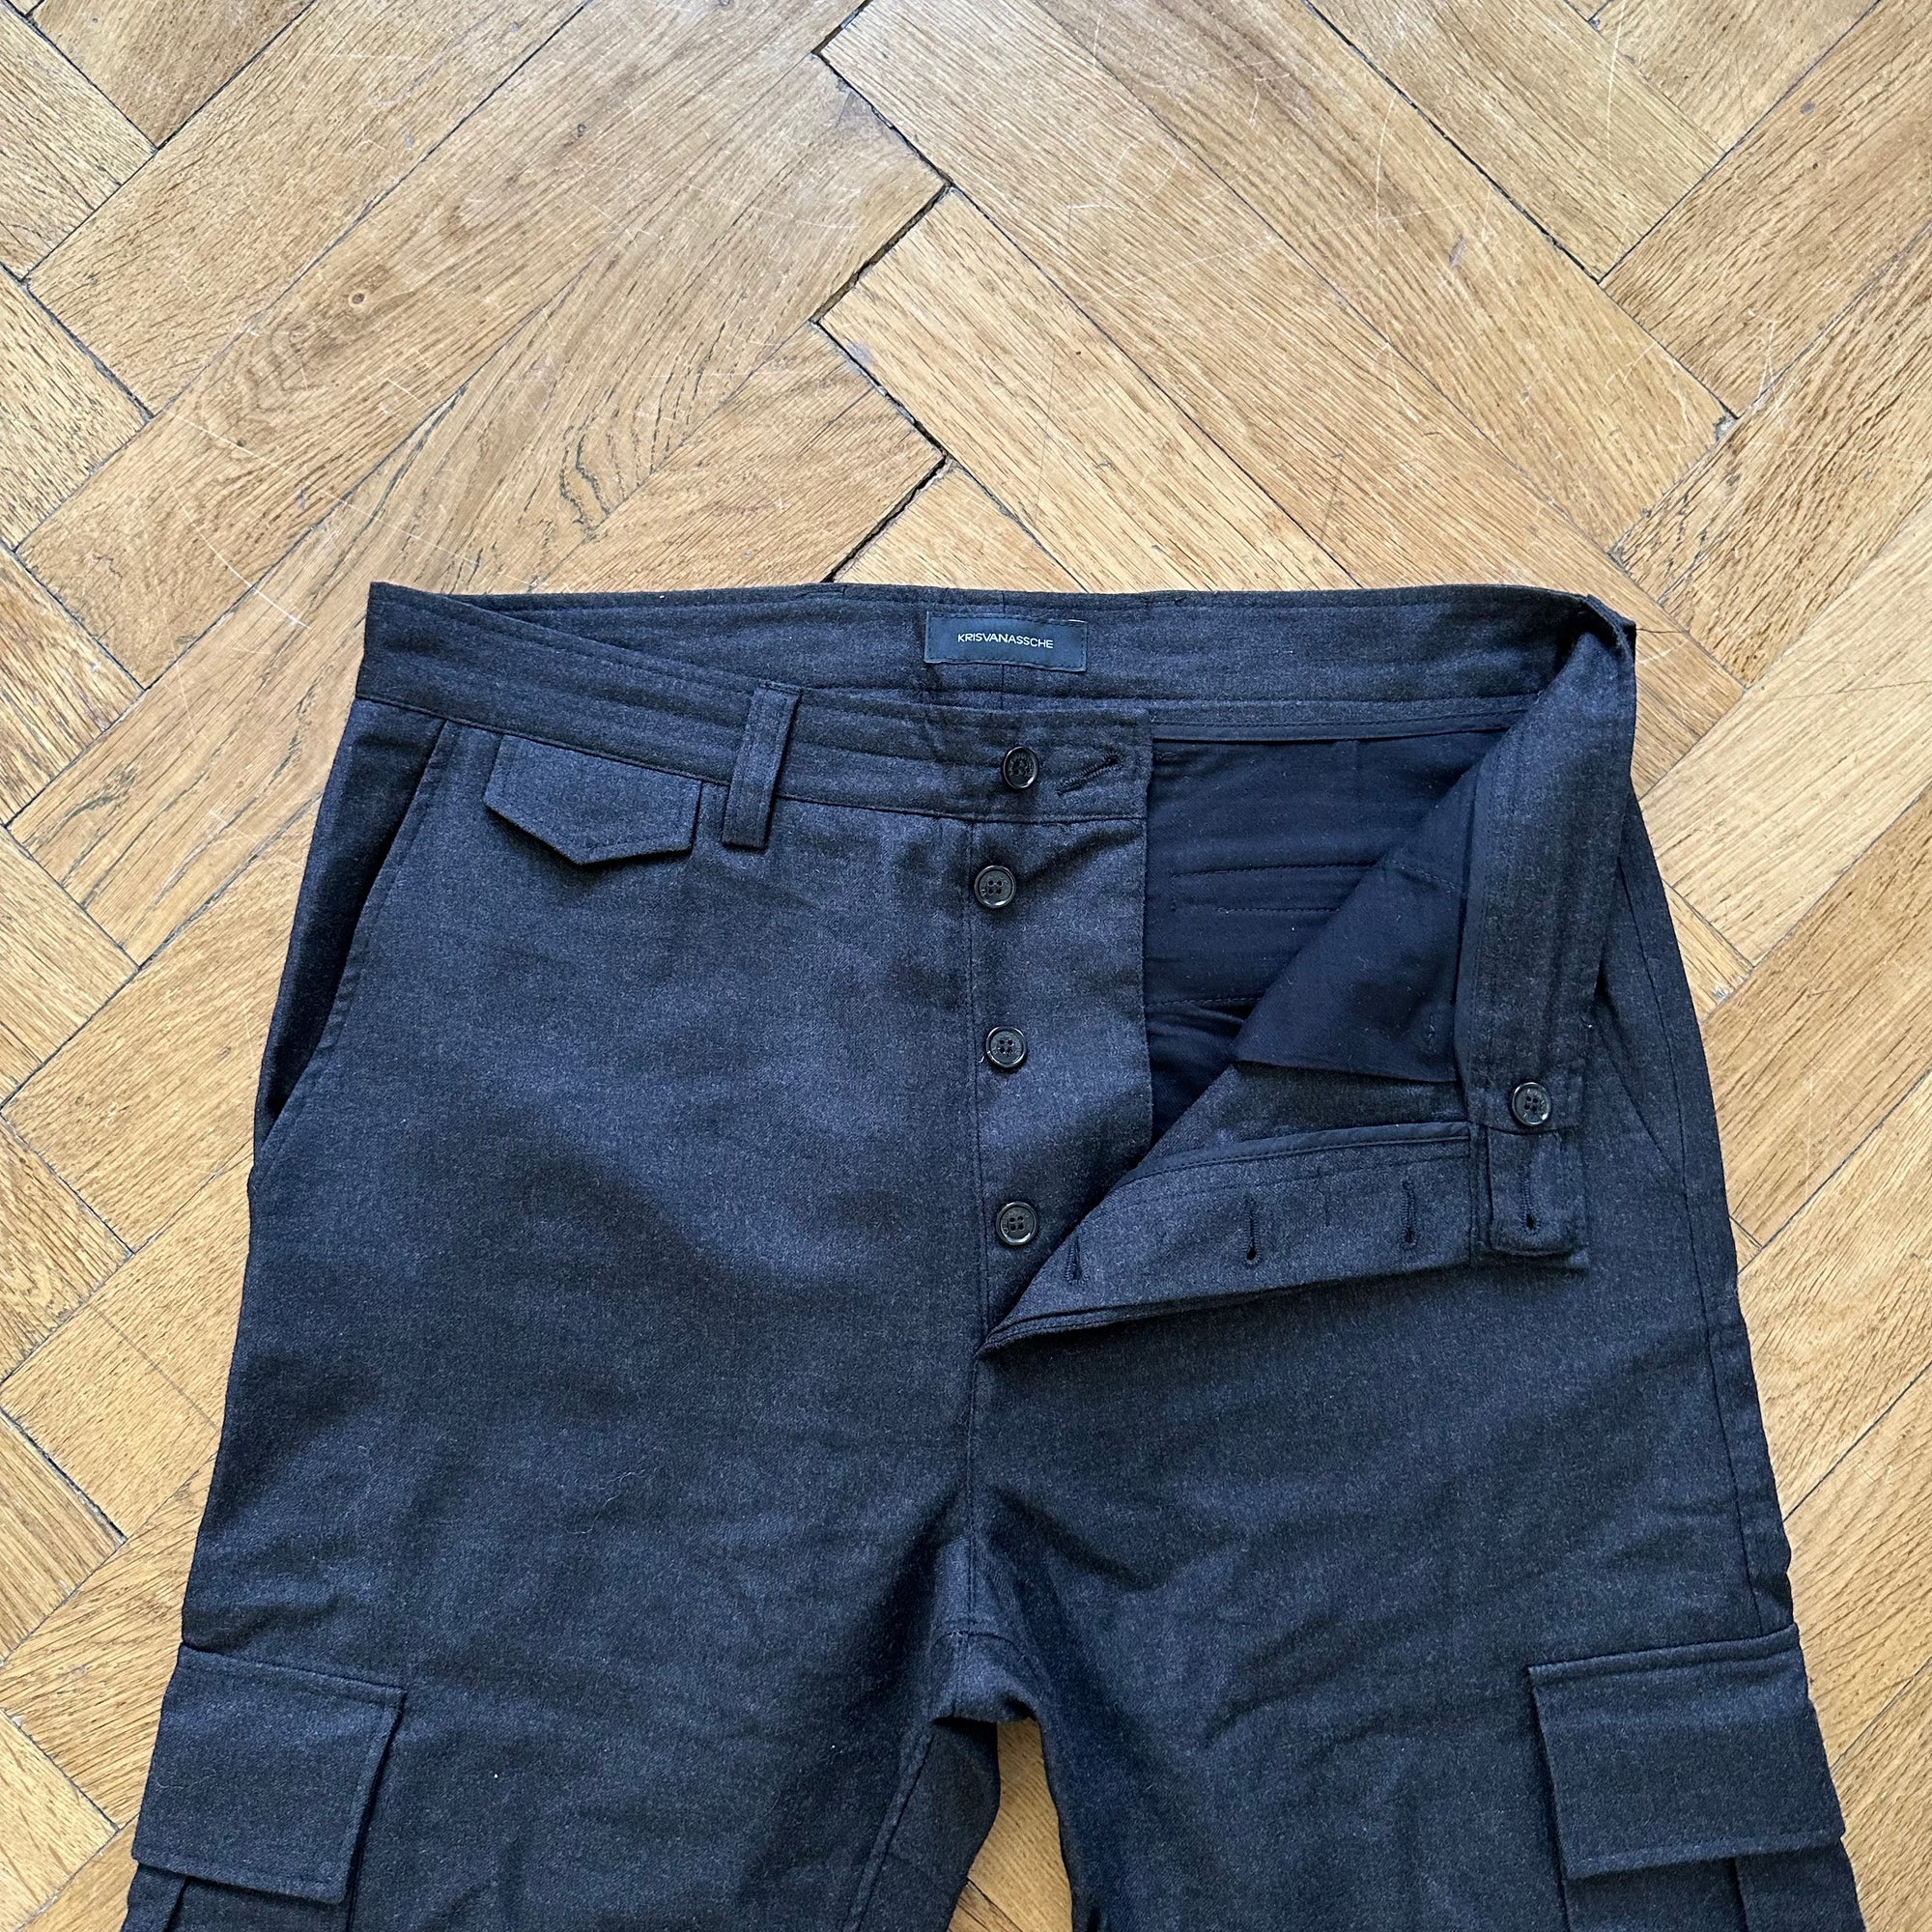 Kris Van Assche Wool Cargo Pants - Ākaibu Store